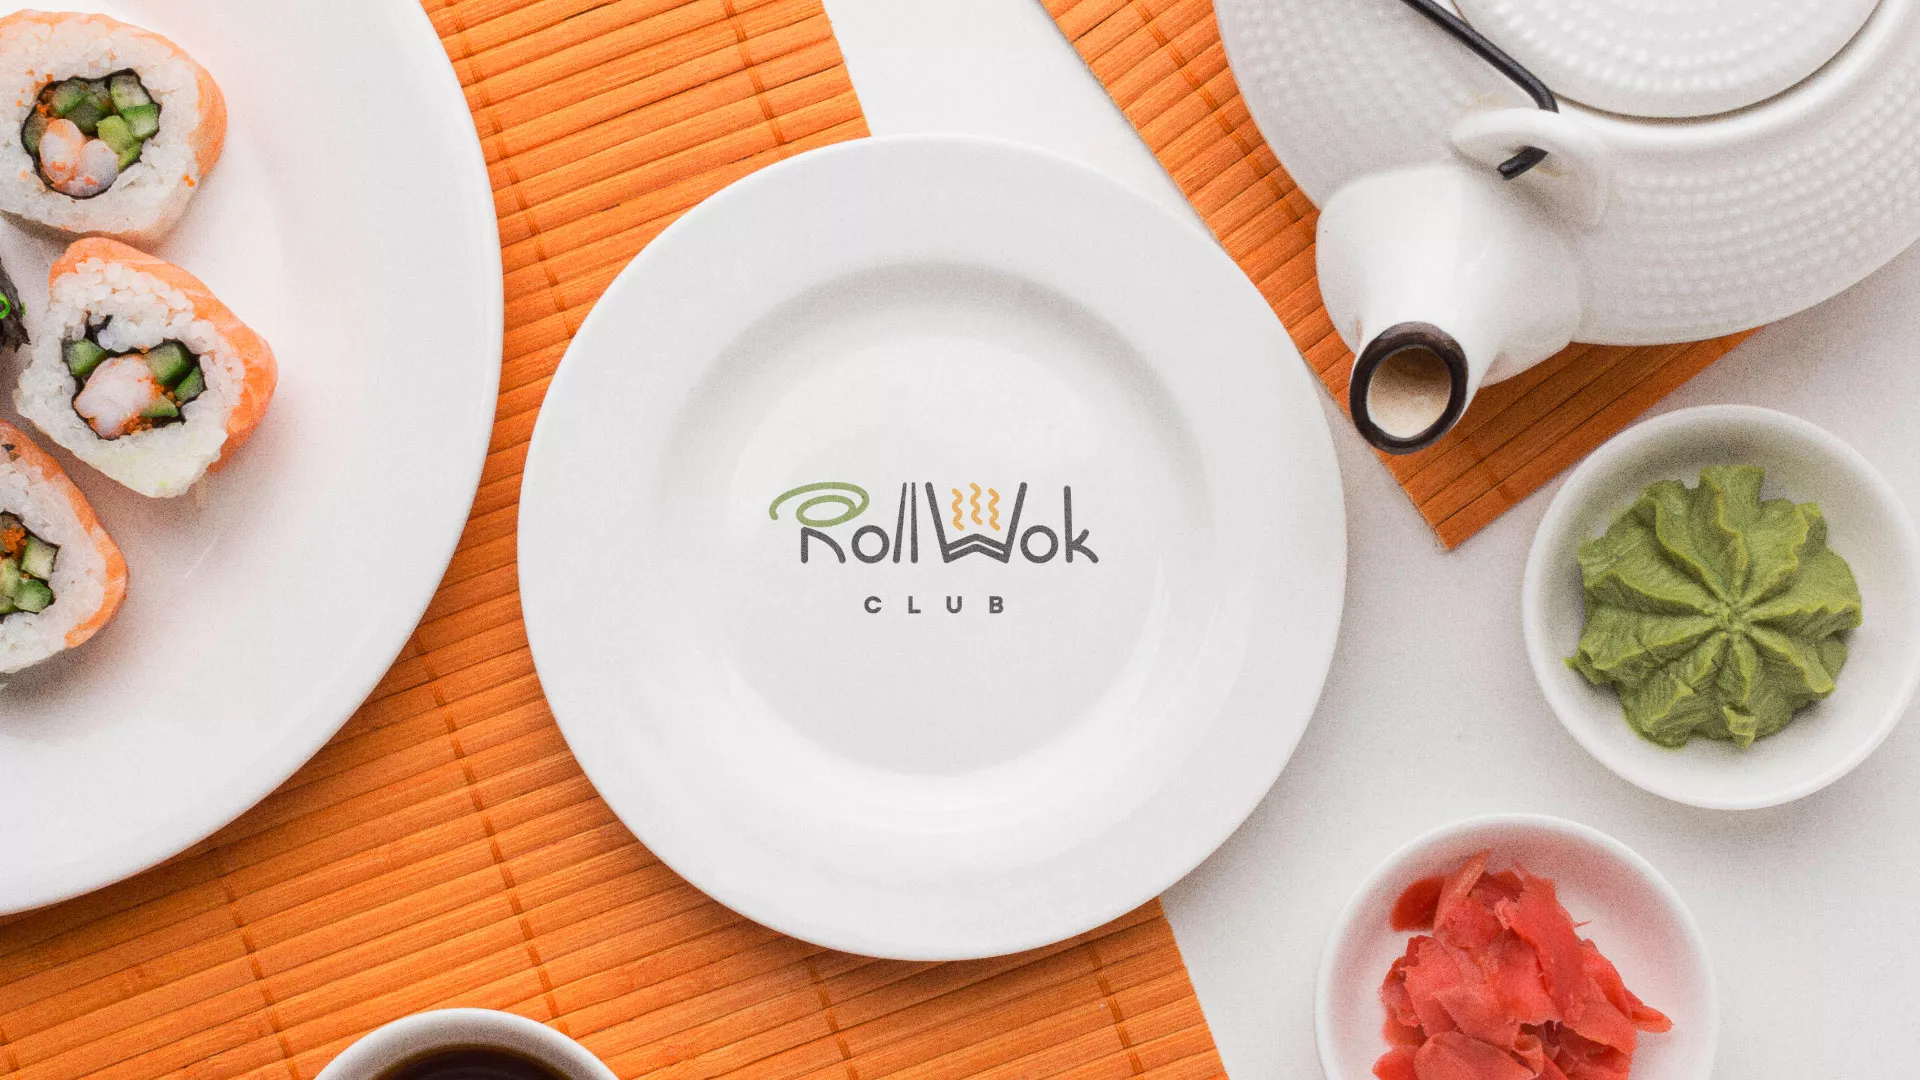 Разработка логотипа и фирменного стиля суши-бара «Roll Wok Club» в Большом Камне